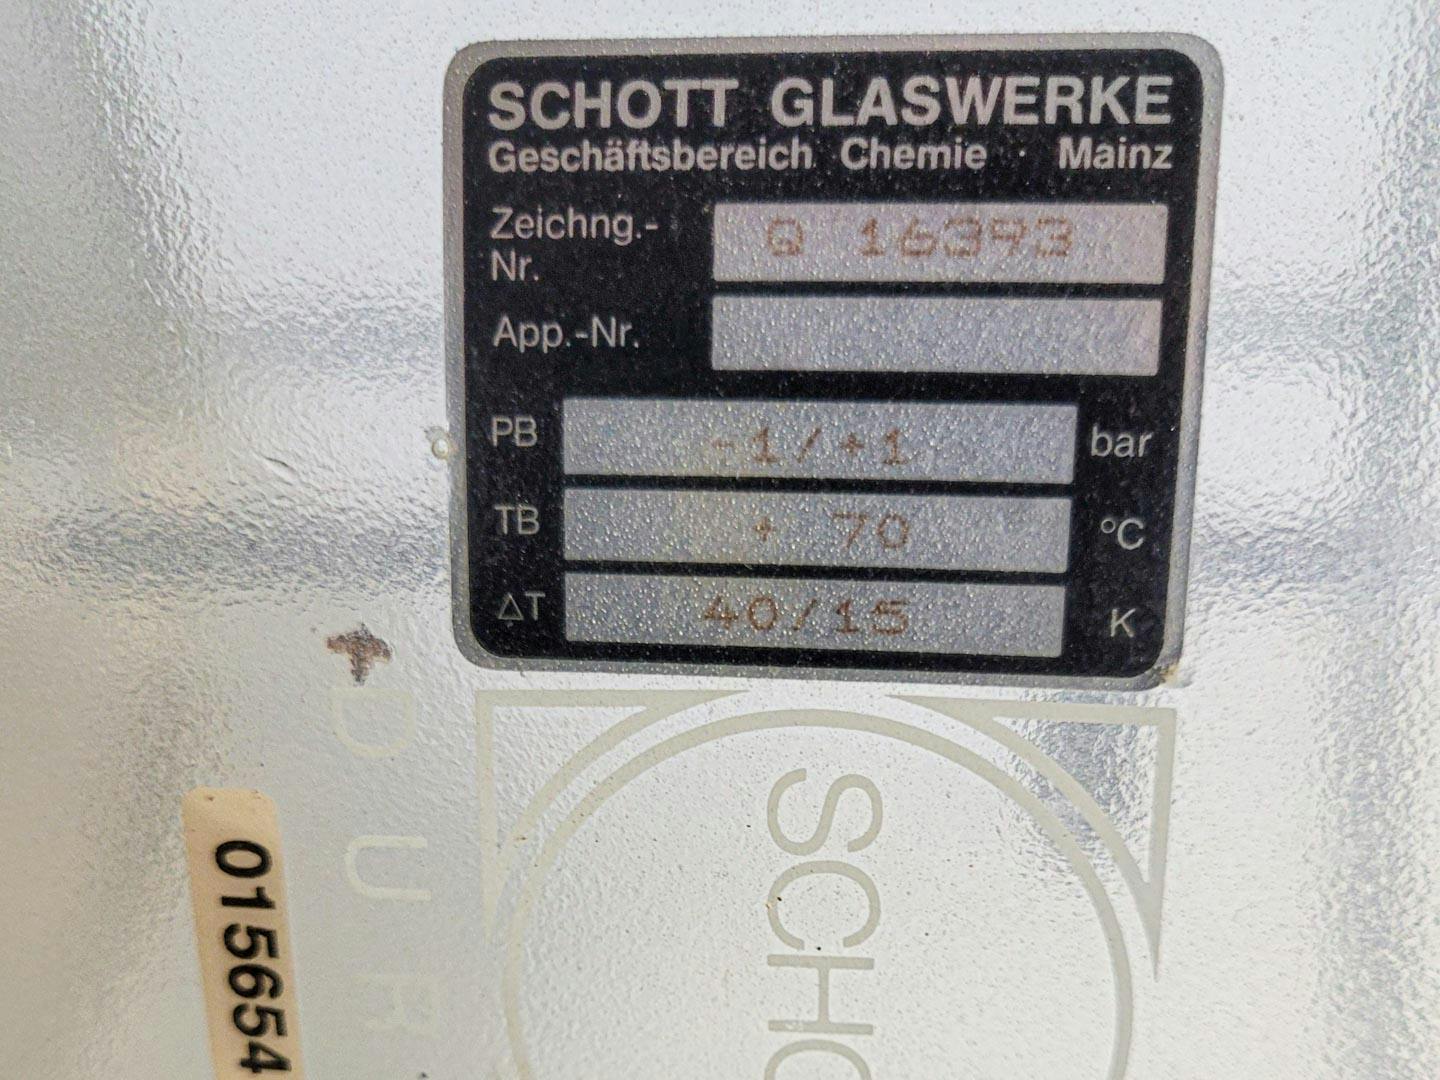 Schott 235 Ltr. - Míchací nádoba - image 12